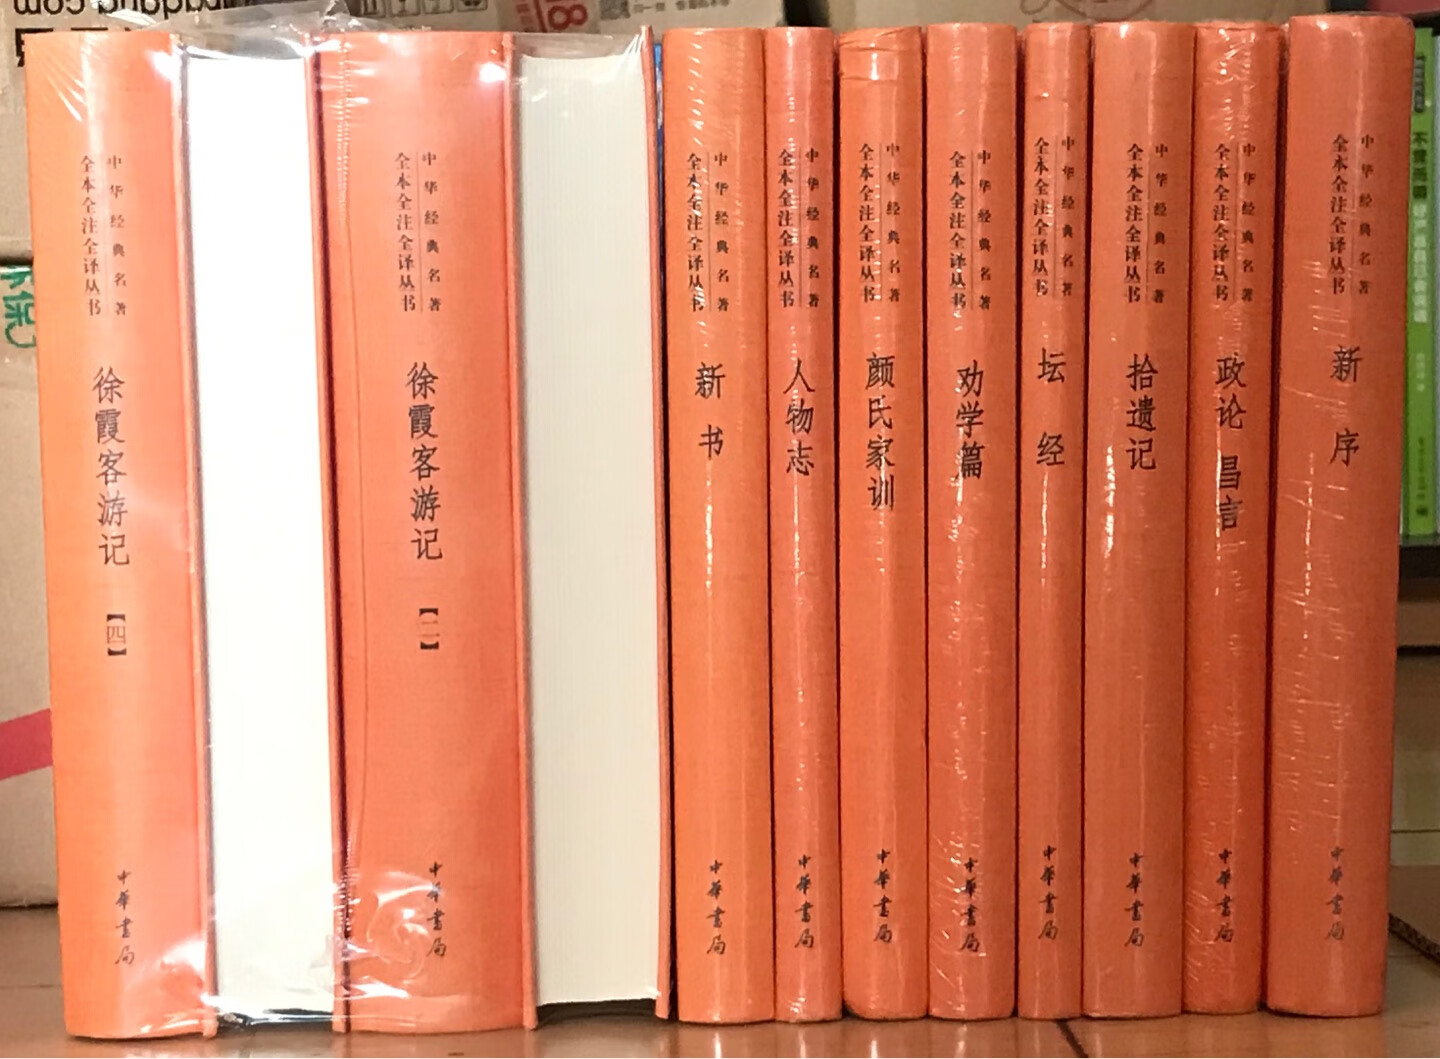 中华书局这套《中华经典名著全本全注全译》很好，买齐收藏传家。531促销给力！